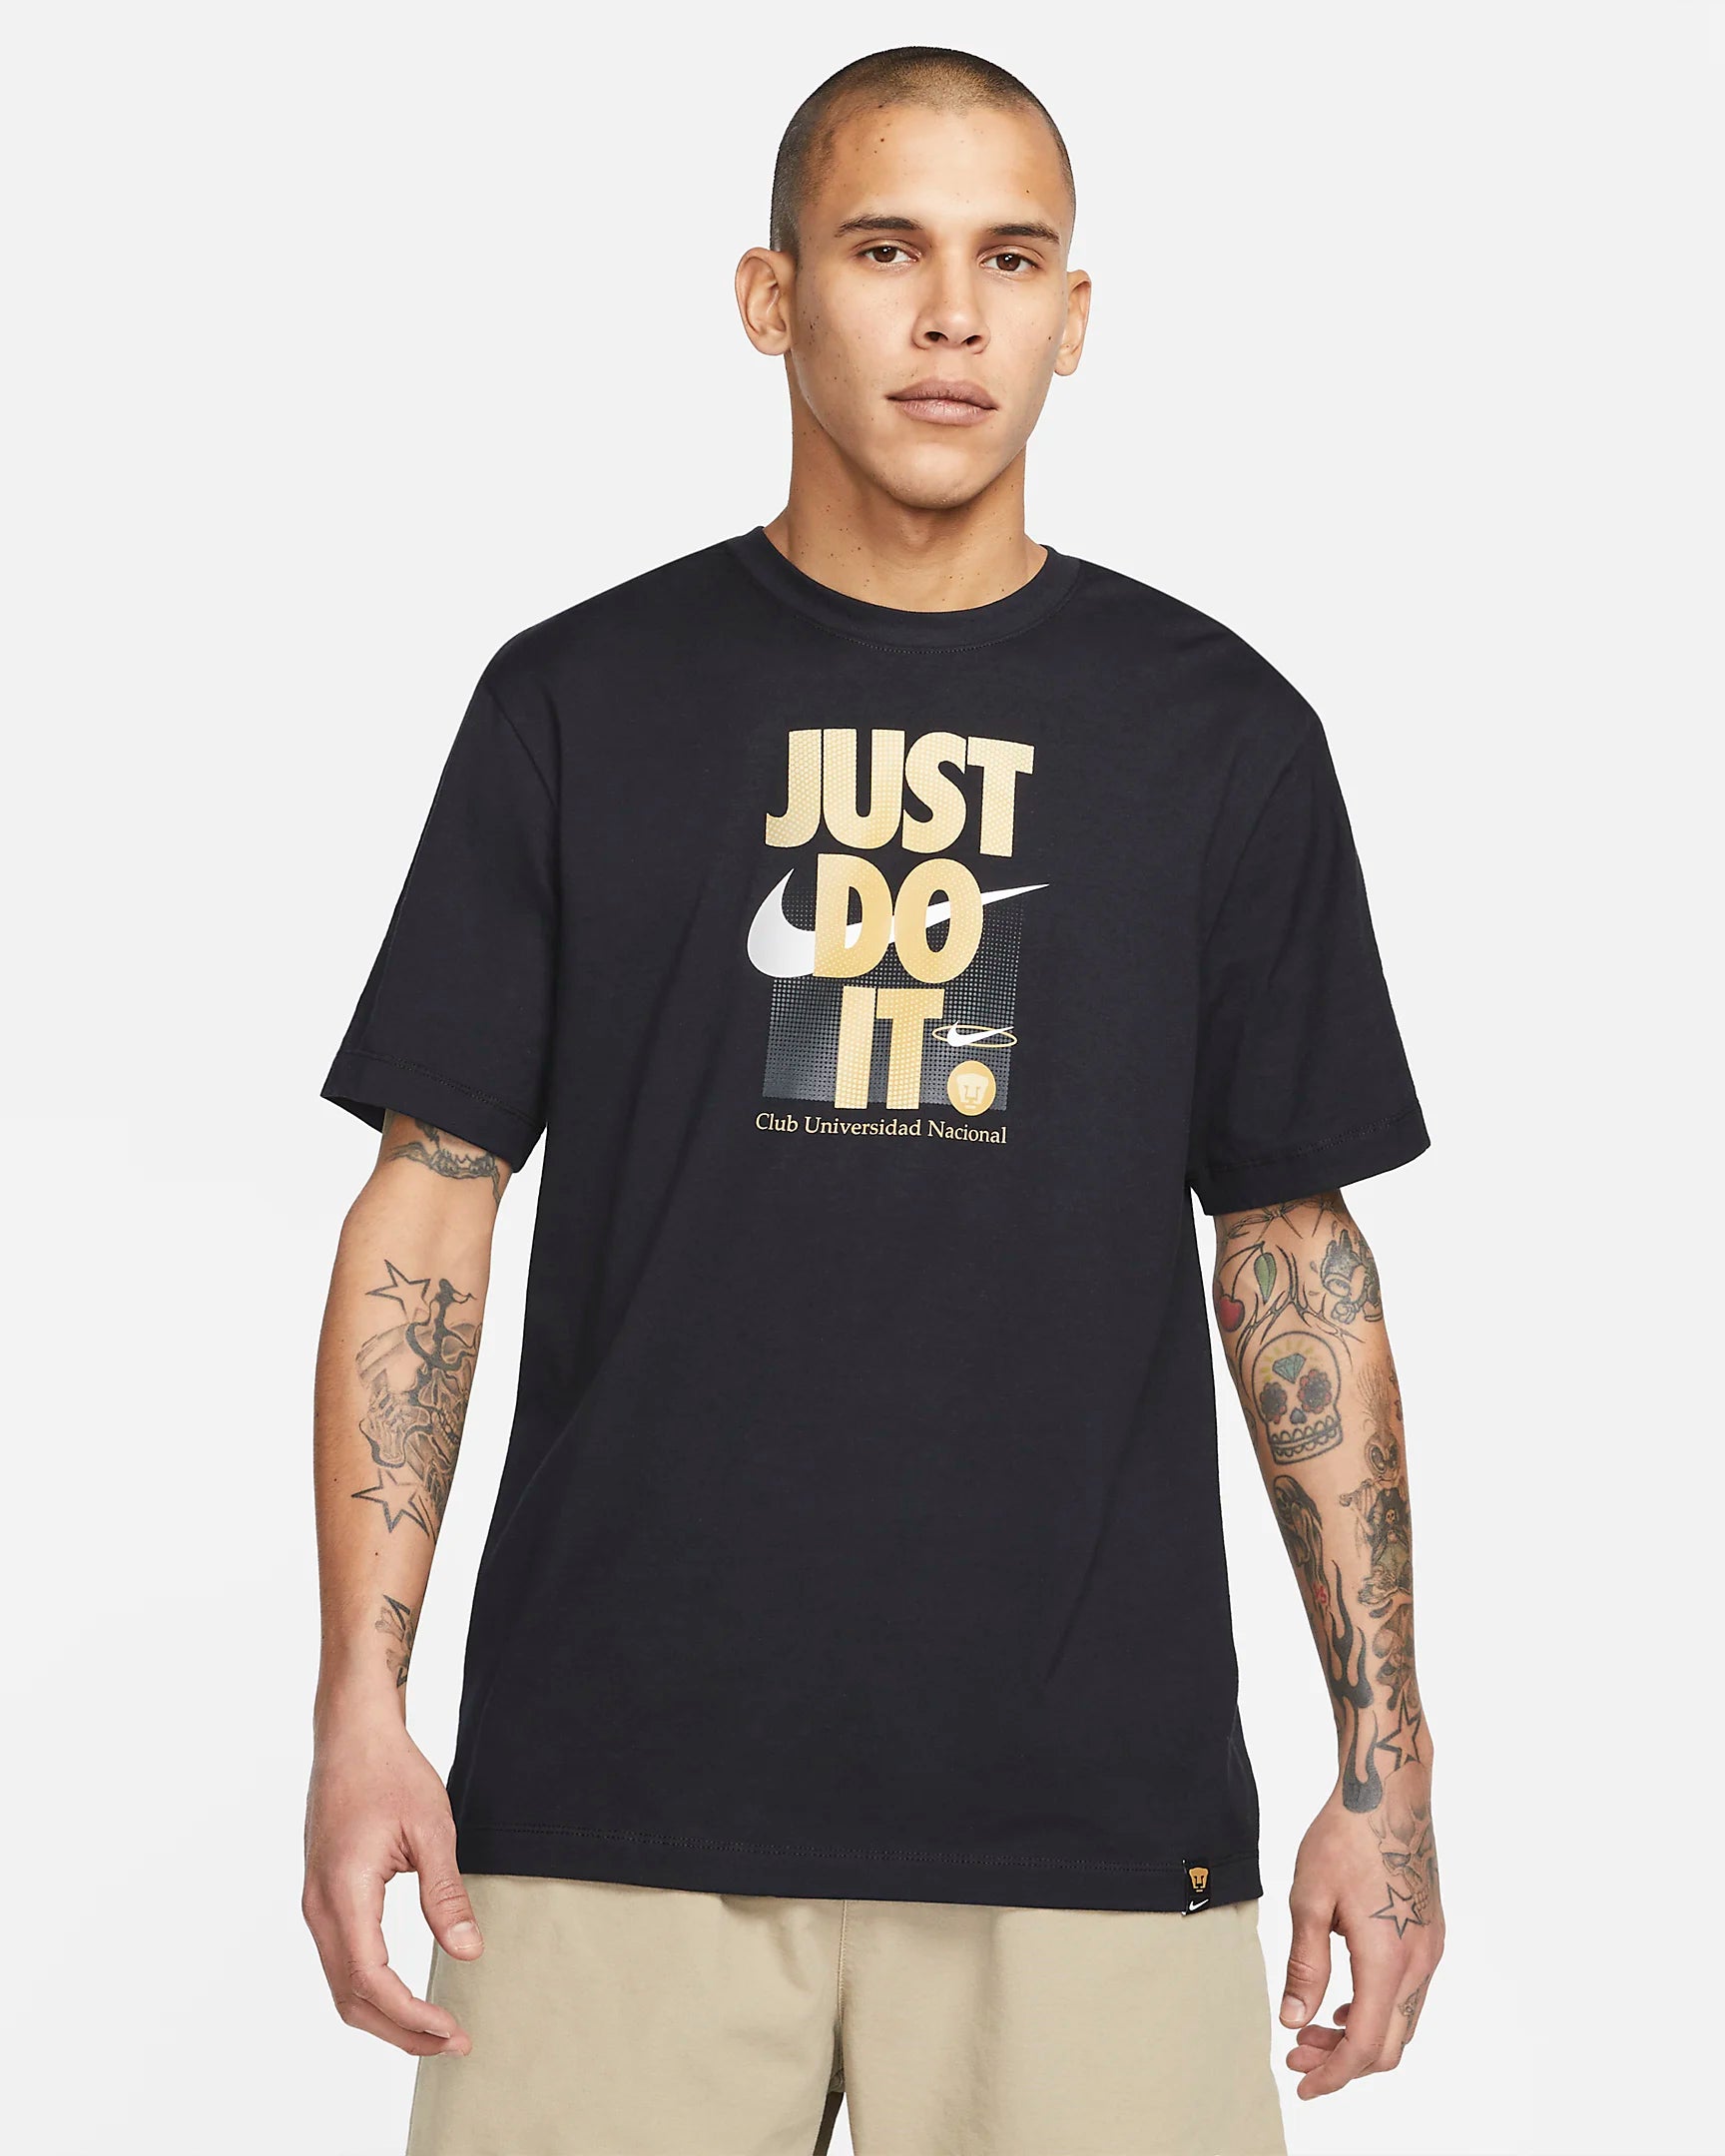 Nike PUMAS UNAM Just Do It T-Shirt- Black